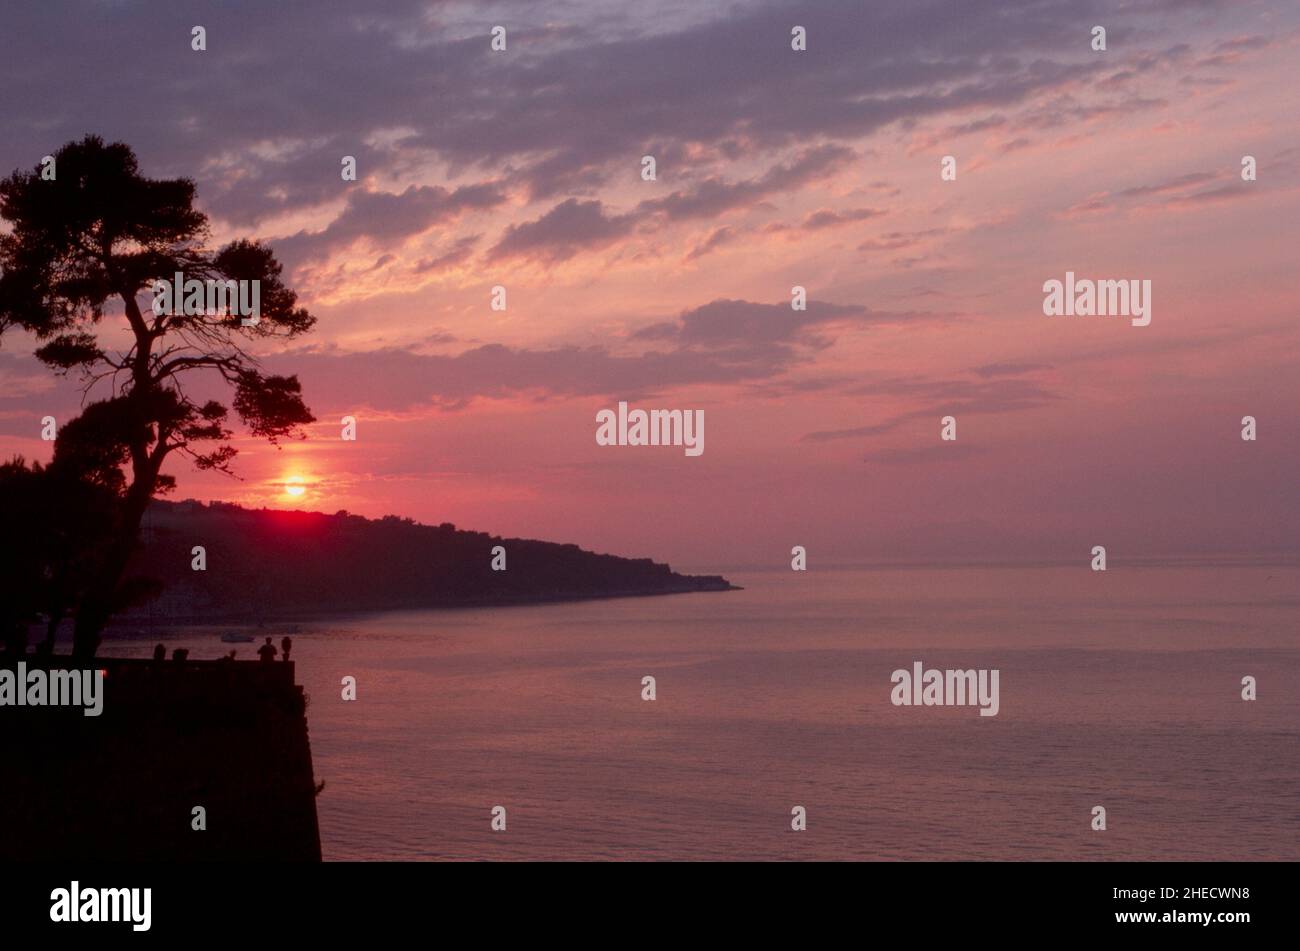 Lever de soleil pittoresque sur la côte avec terre et arbre silhouettés.Concept de voyage Banque D'Images